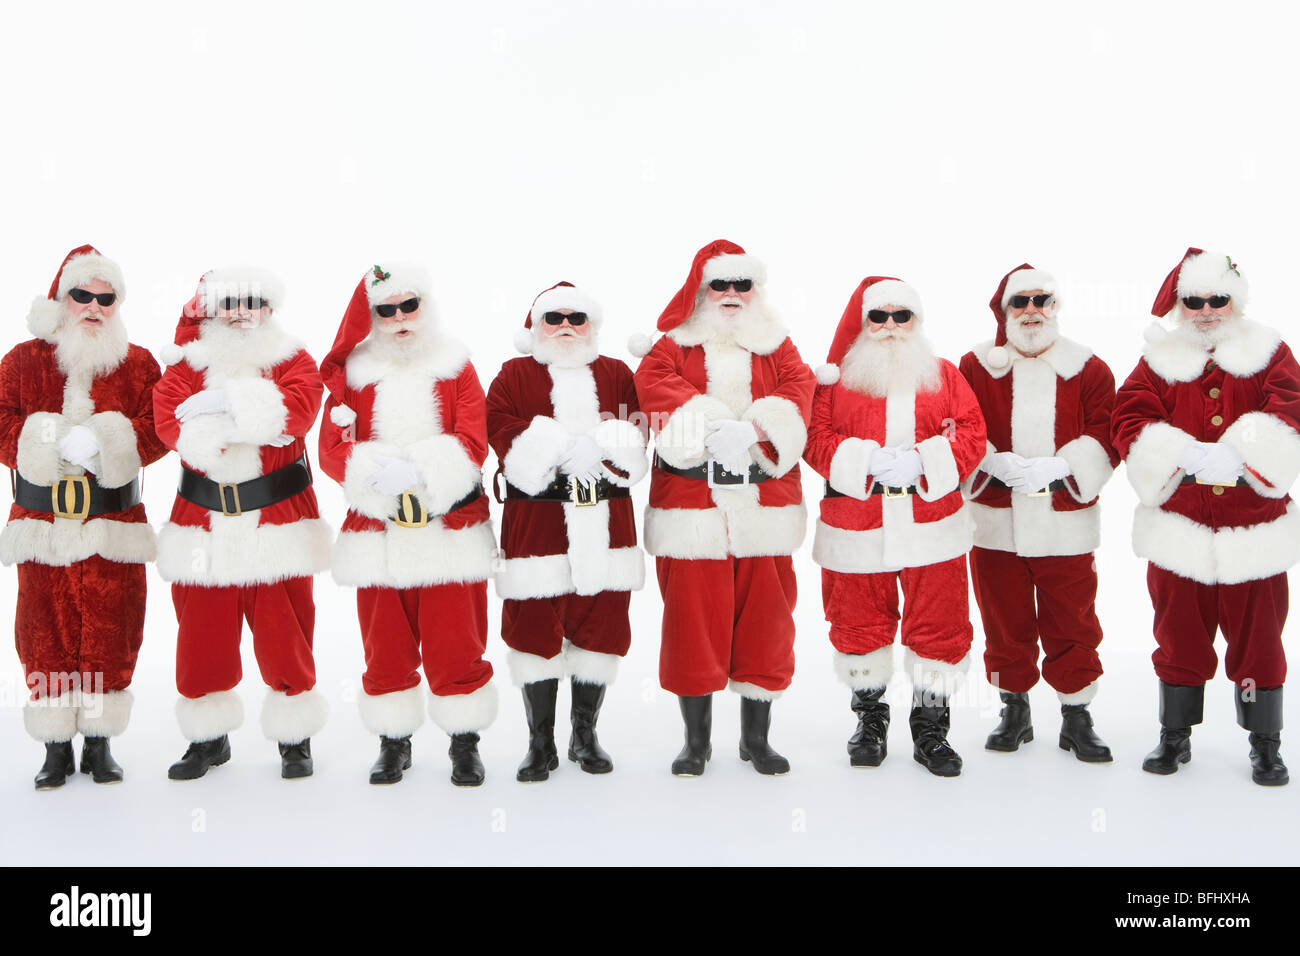 Immagini Natale Uomini.Un Gruppo Di Uomini Vestiti Da Babbo Natale Con Occhiali Da Sole Foto Stock Alamy